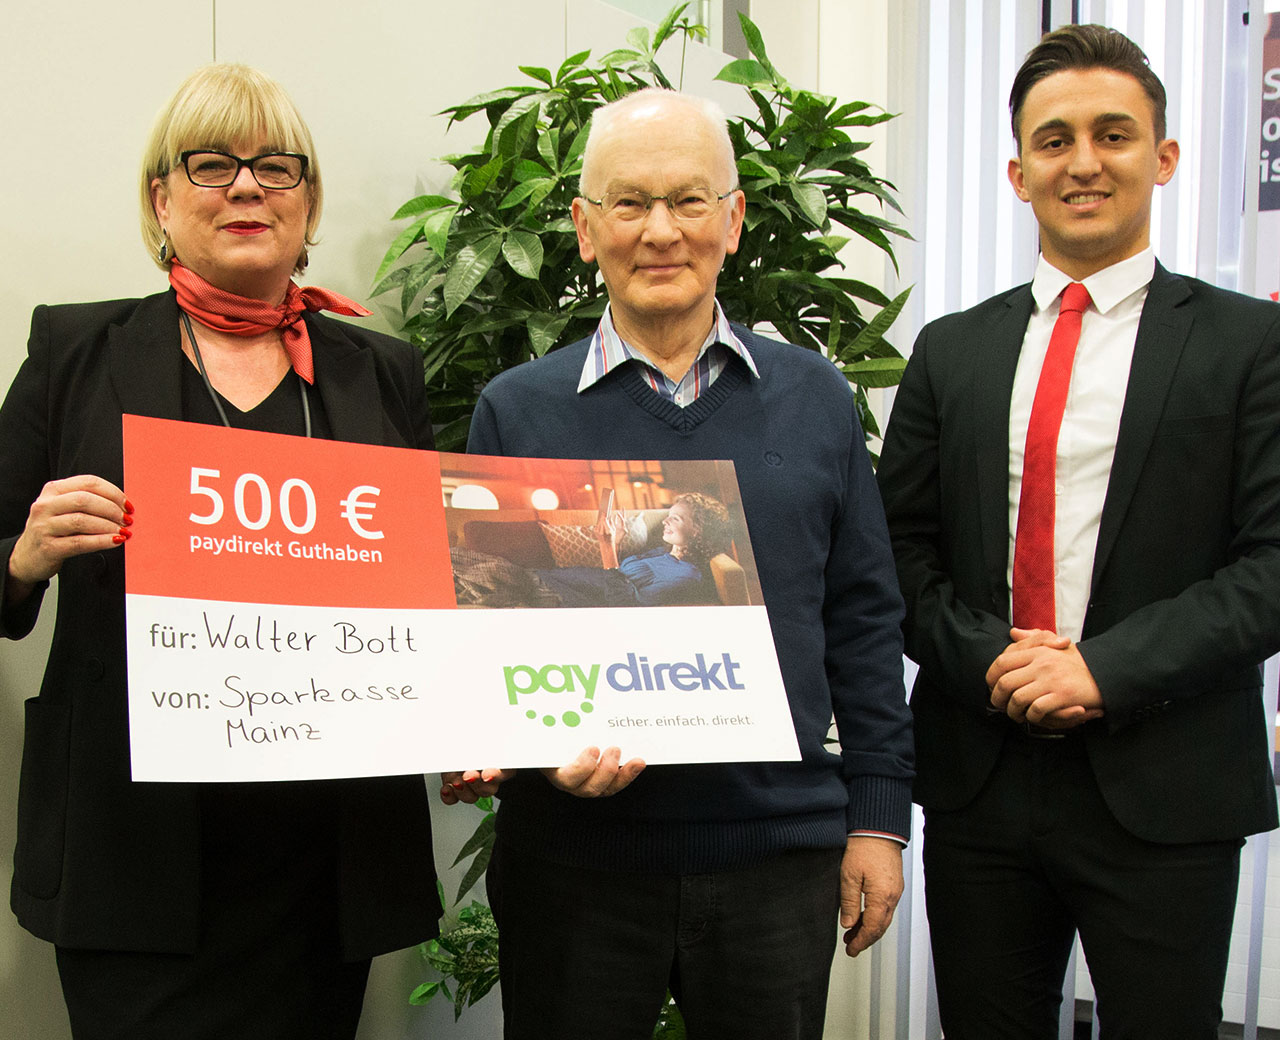 Gewinner des 500€ Paydirekt Guthabens